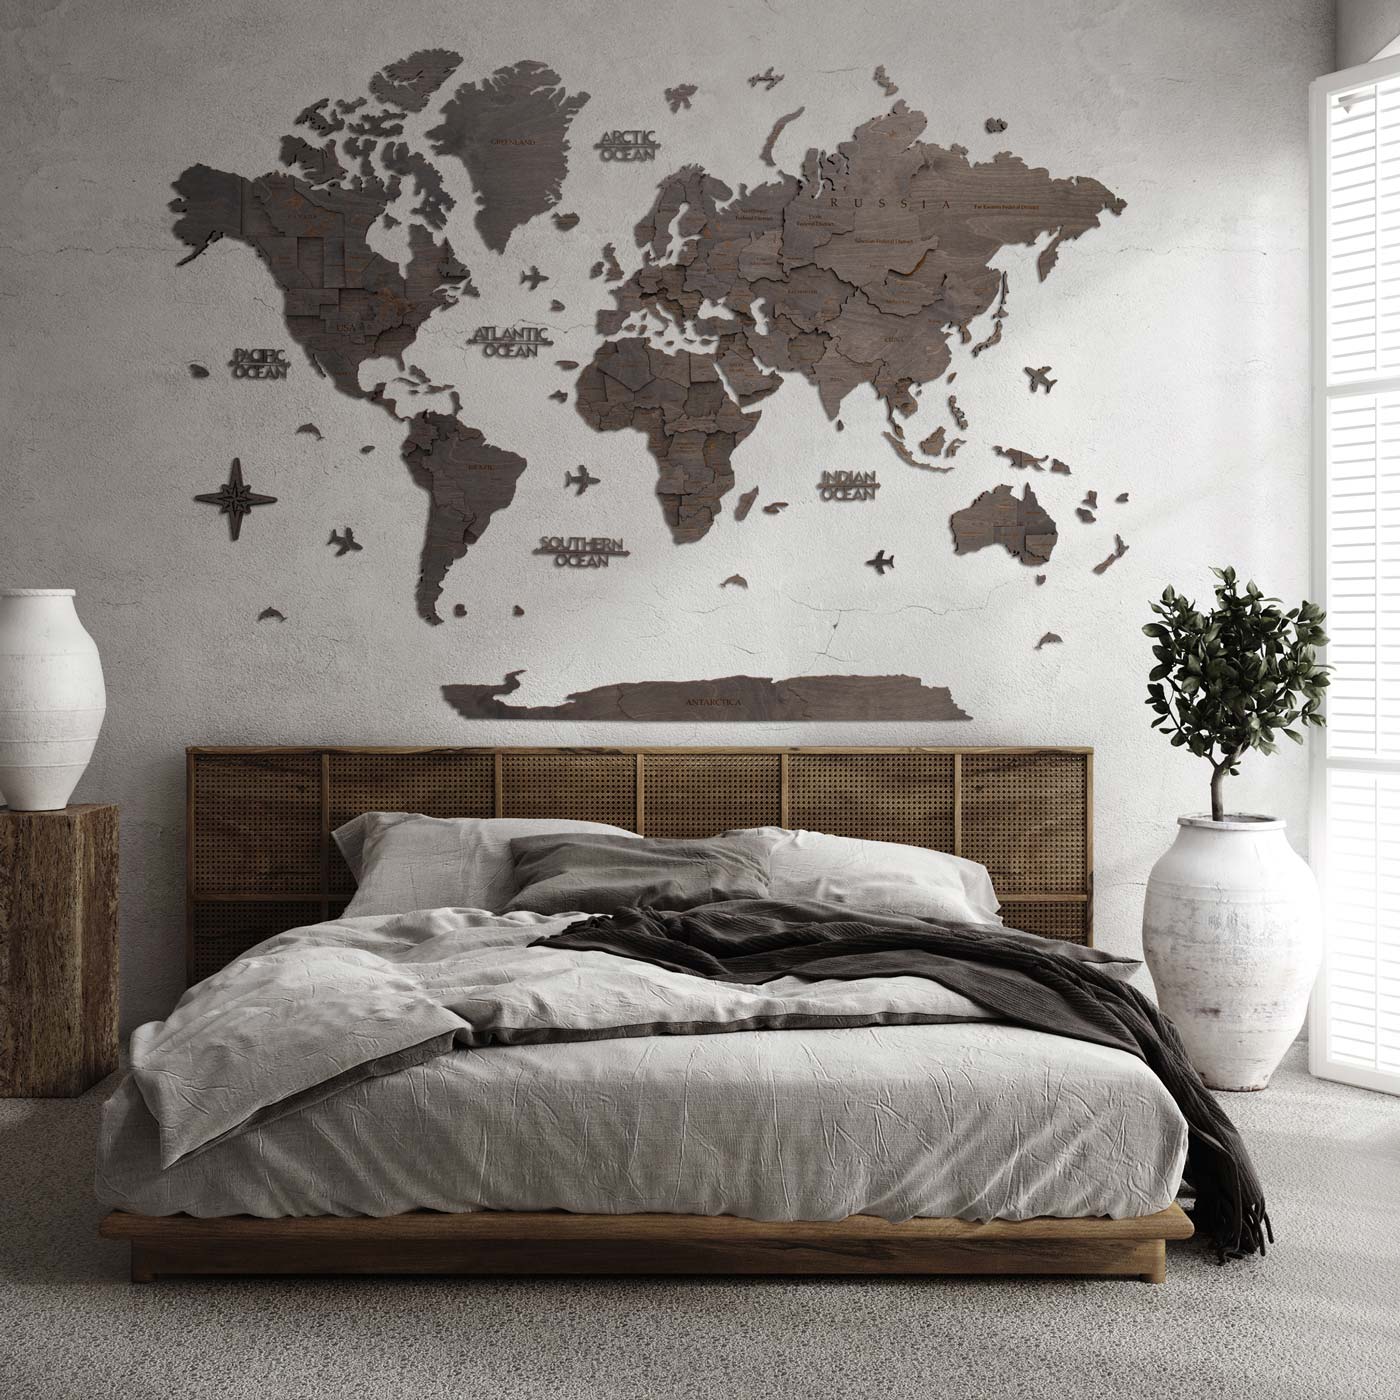 Τρισδιάστατος ξύλινος παγκόσμιος χάρτης Ebony. Ξύλινη διακόσμηση τοίχου. Ksilart